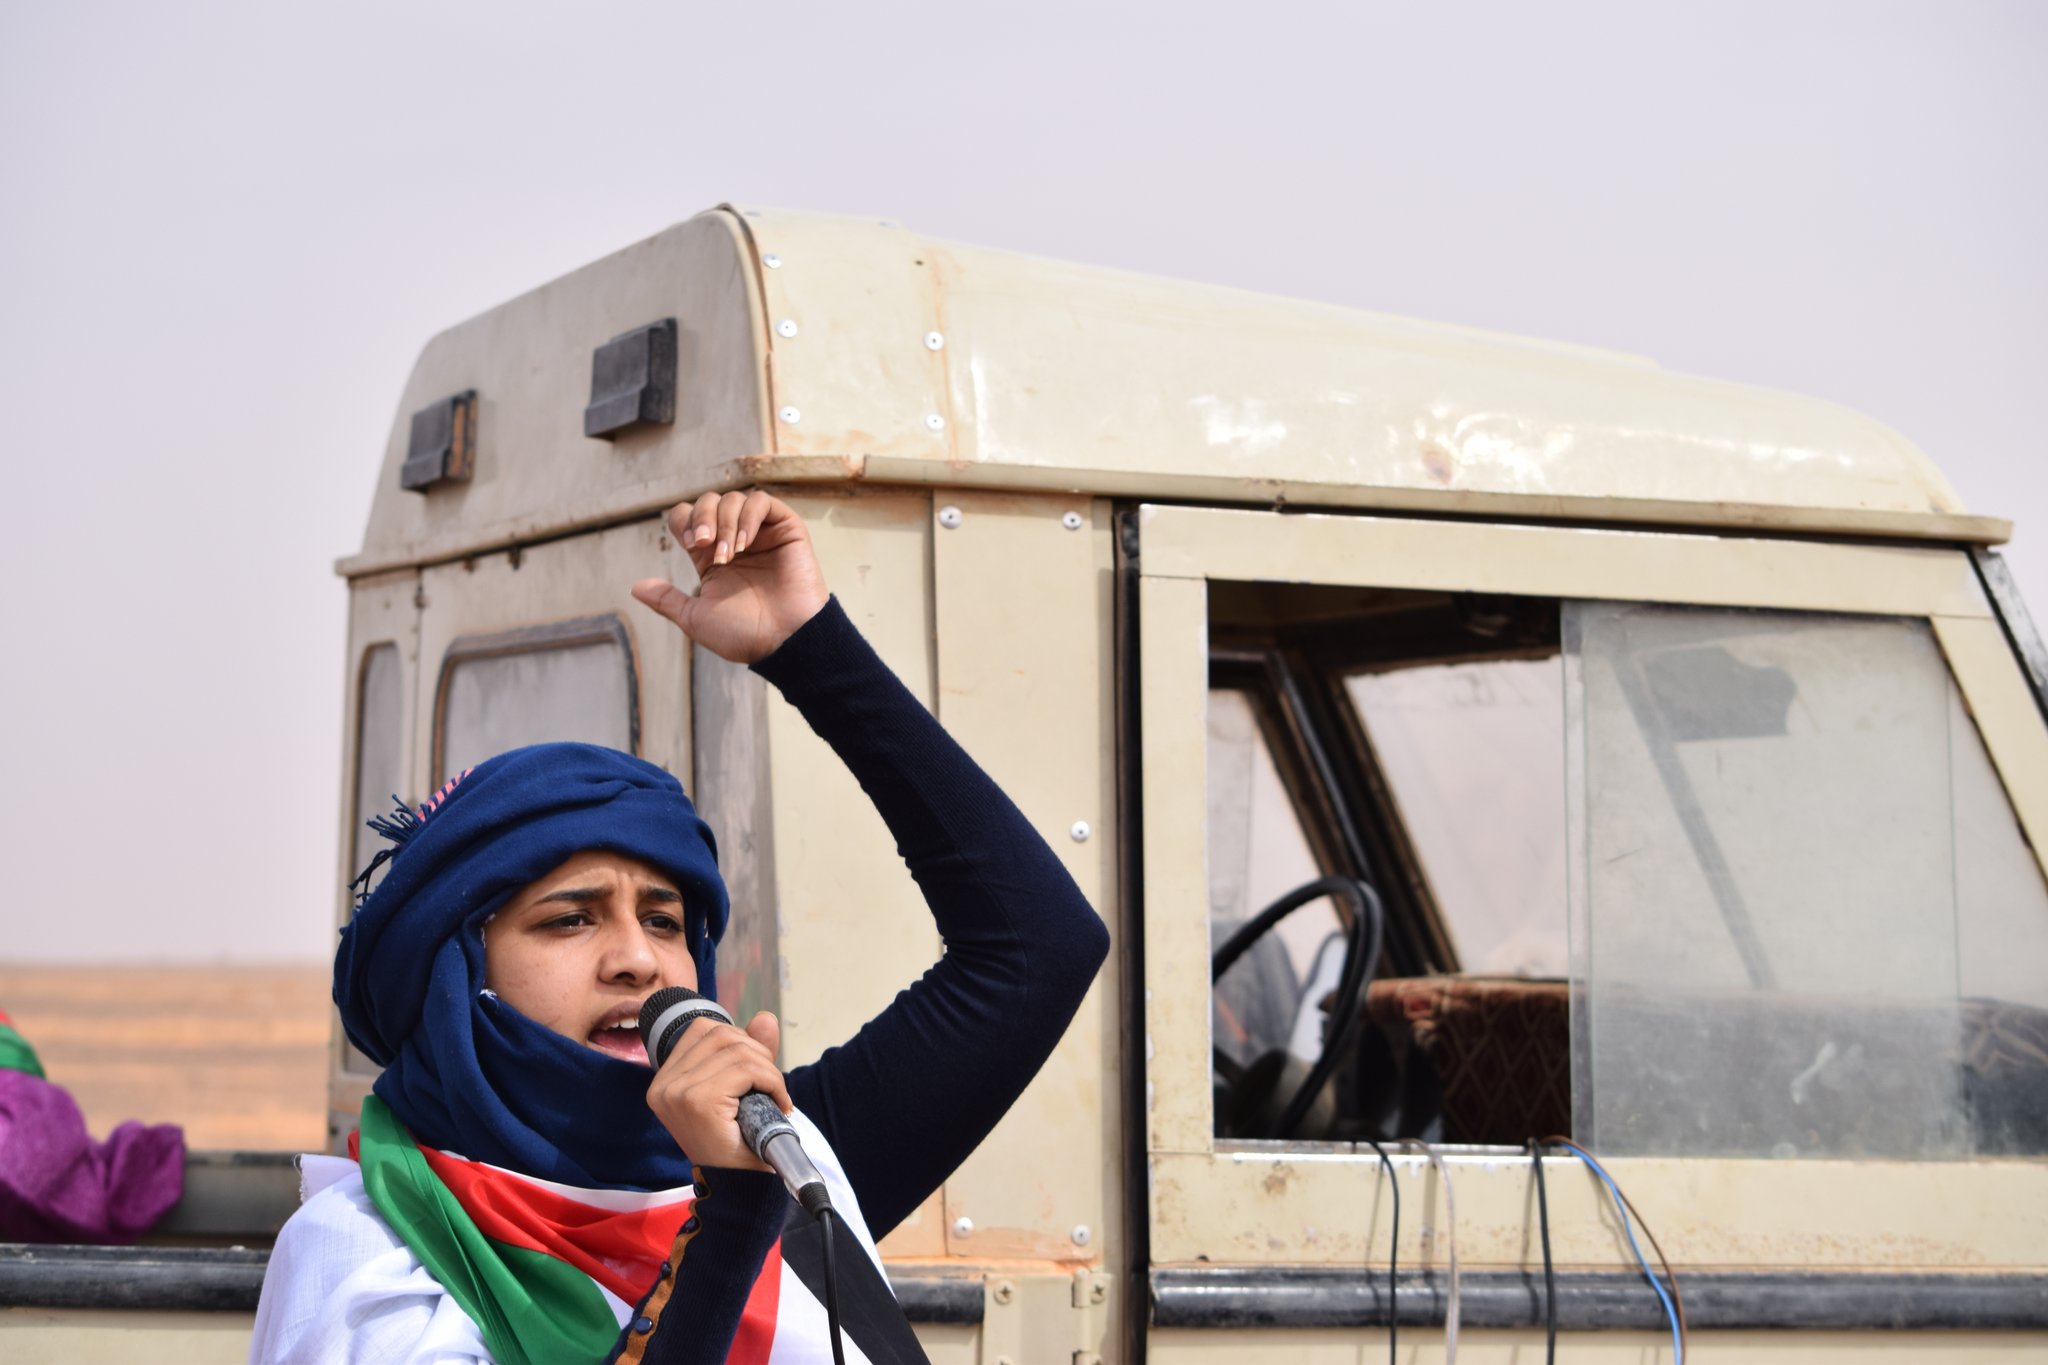 Neix 'Yalah! Sàhara' per "trencar el silenci" sobre el conflicte saharaui